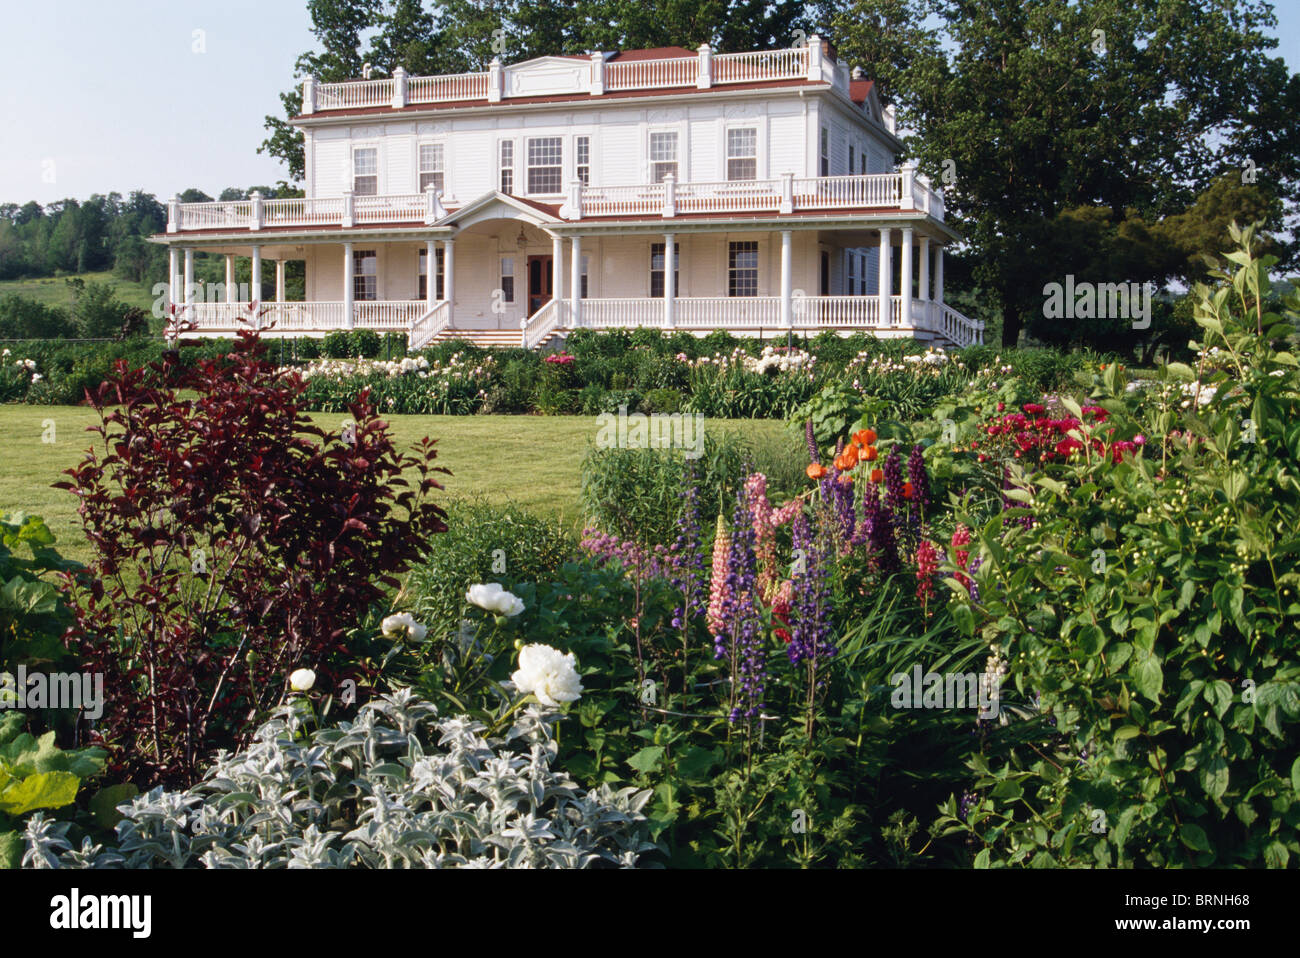 Piante fiorite in border accanto a prato di fronte bianco grande Coloniale Americano-style country house con balcone e veranda Foto Stock